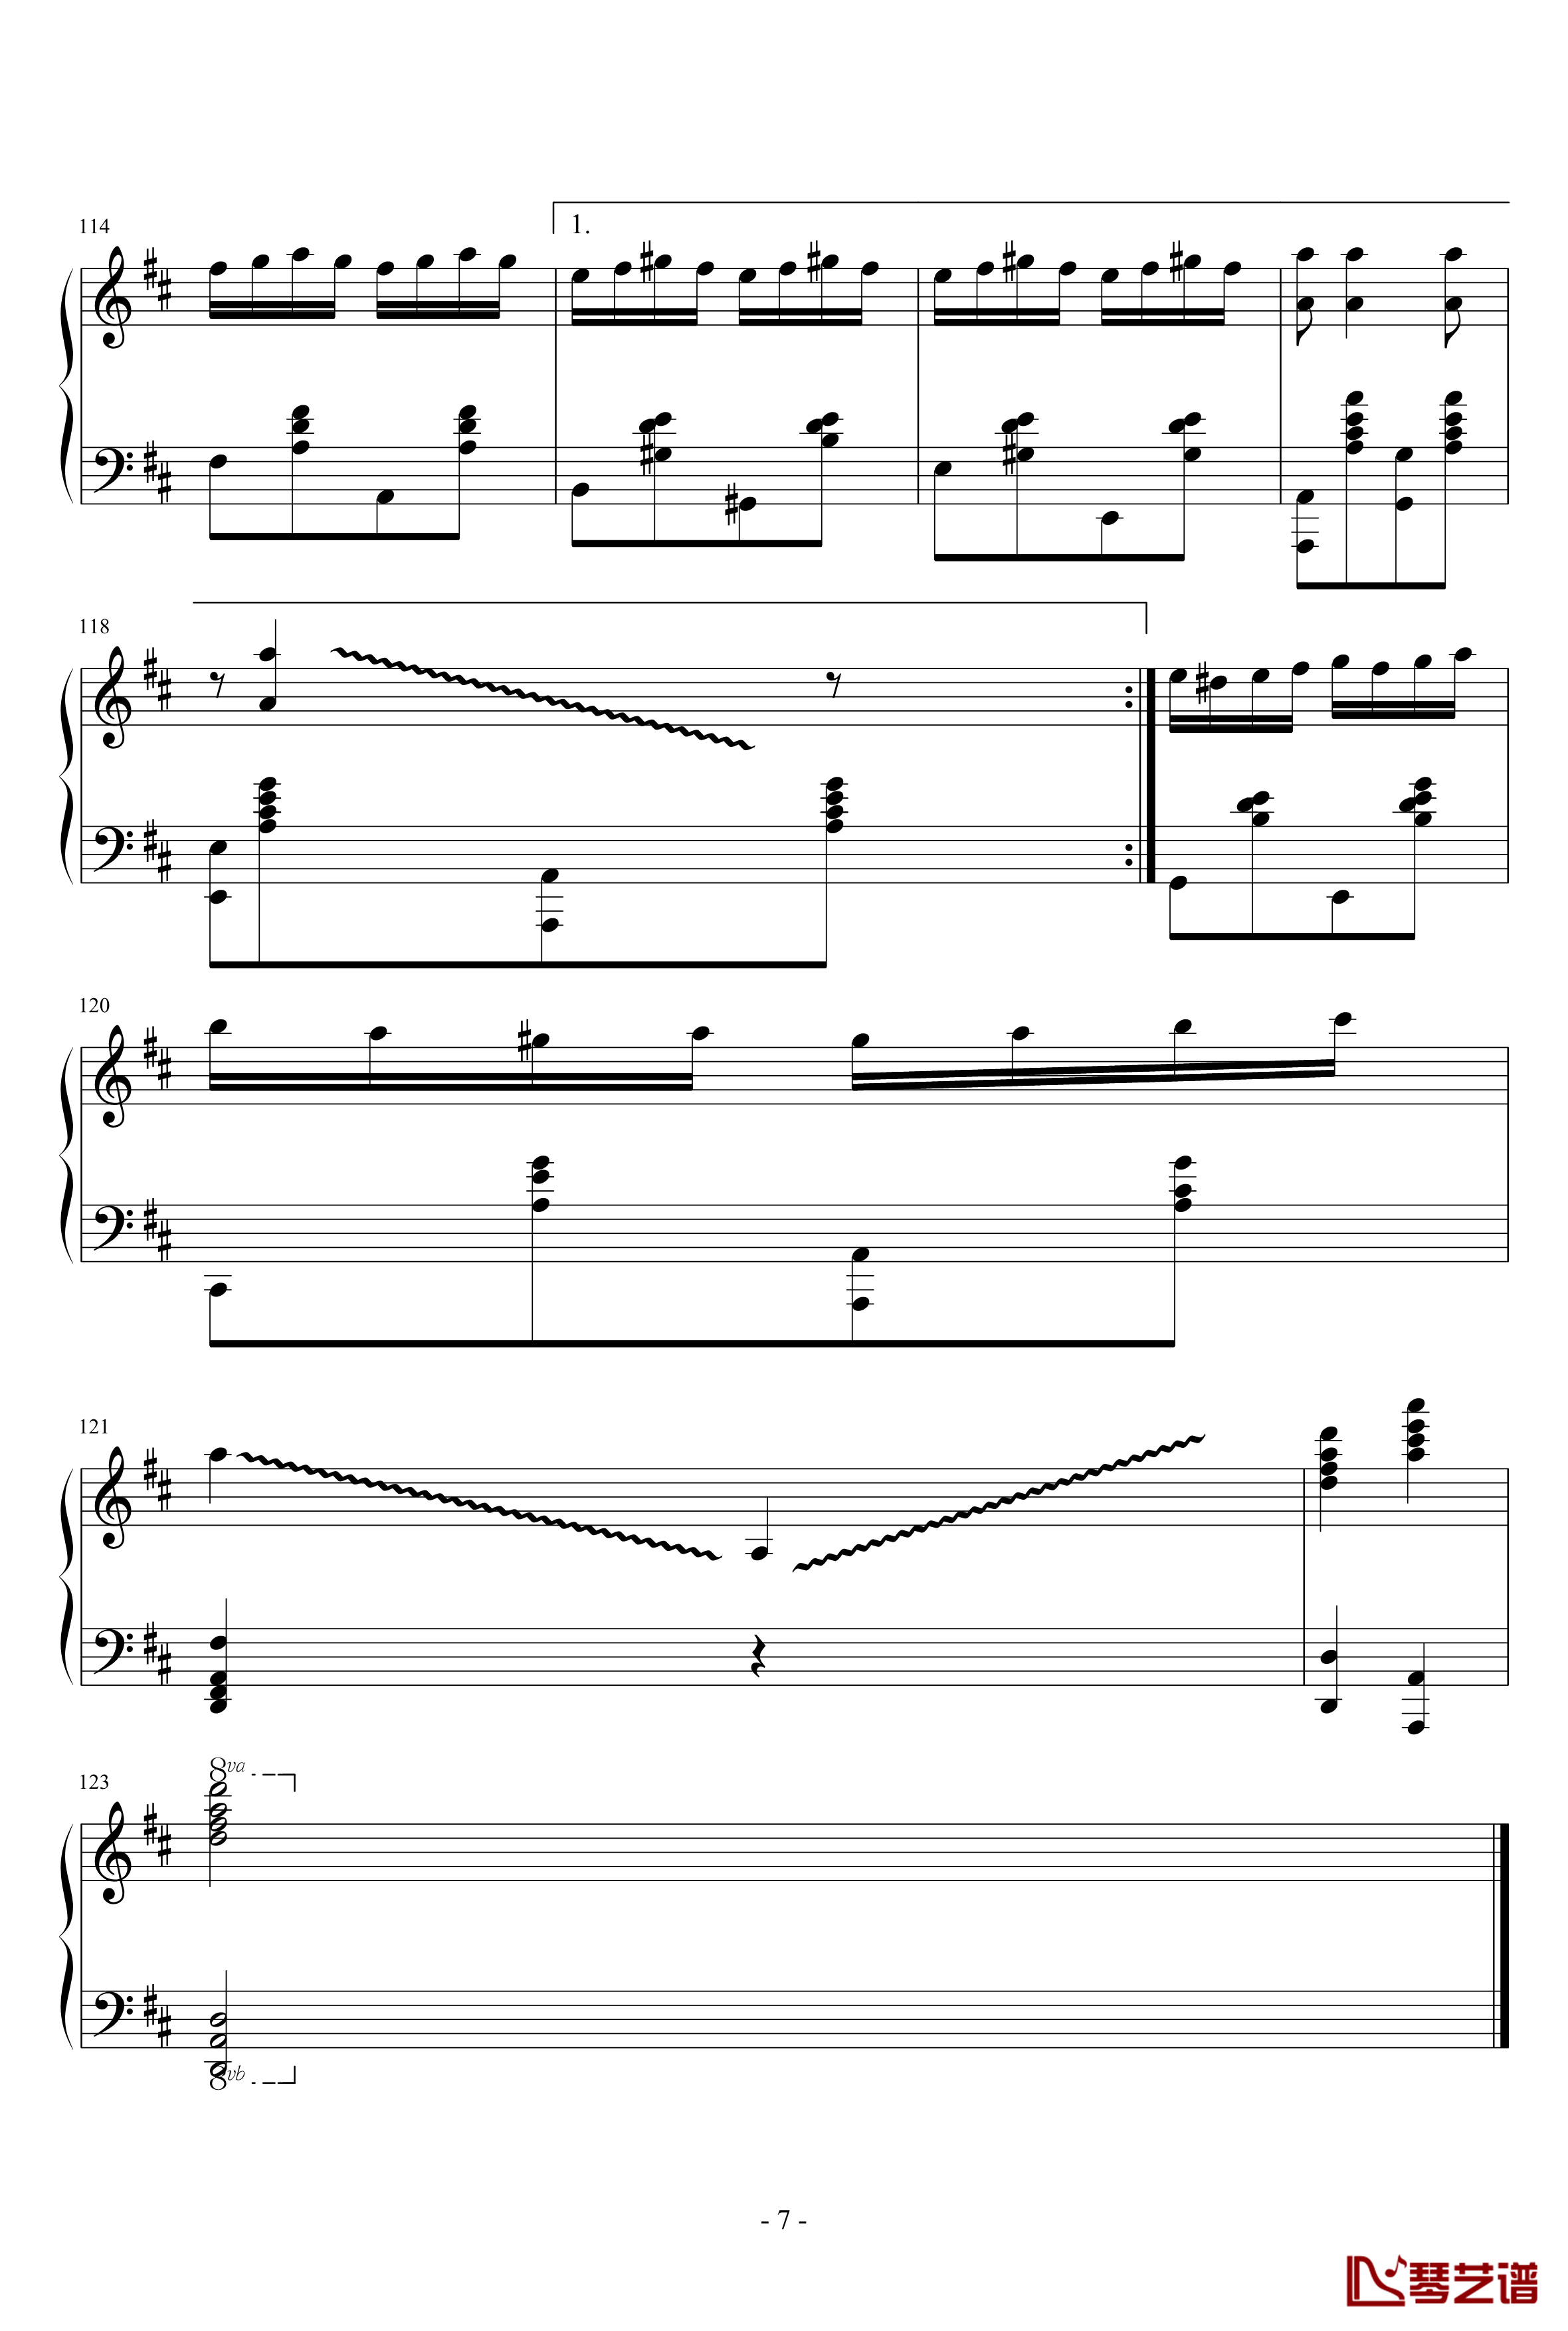 查尔达什舞曲钢琴谱-钢琴版-蒙蒂7